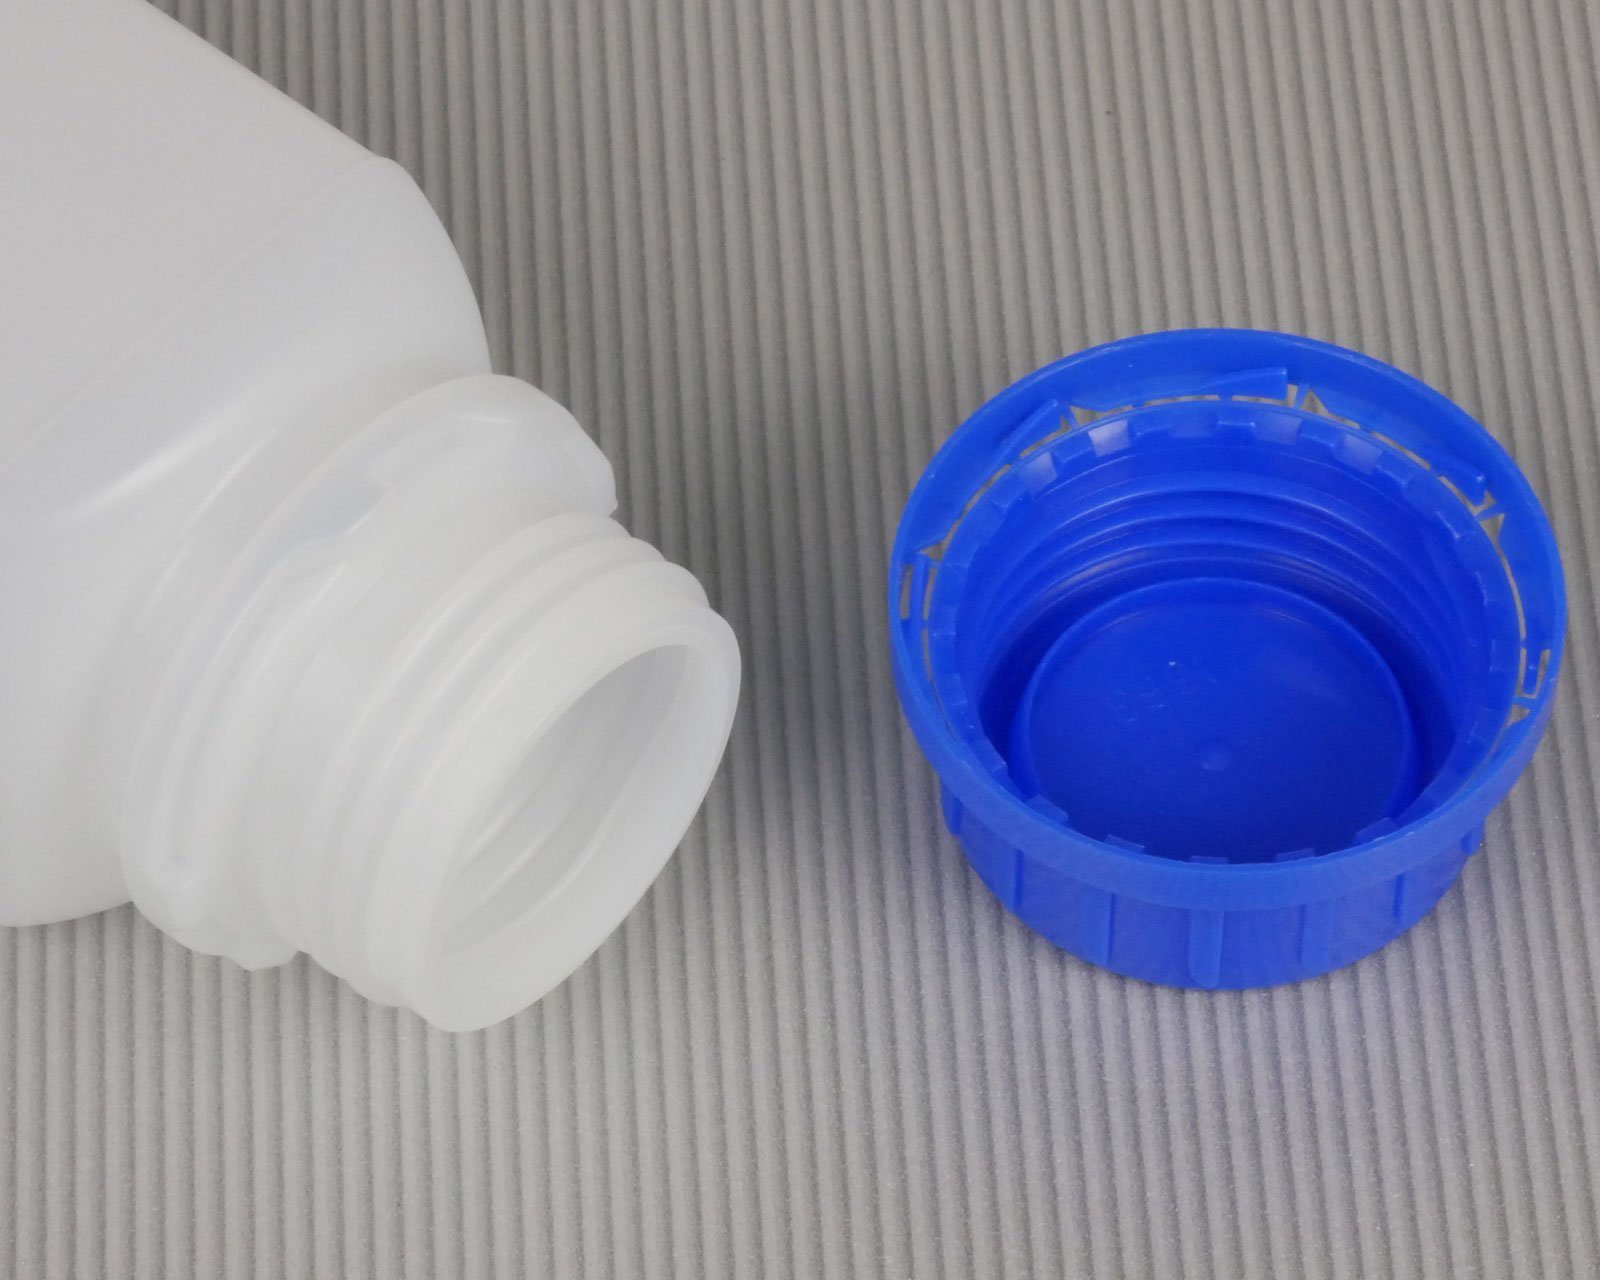 250ml (10 St) Laborflaschen, Plastikfl Weithalsflaschen, Vierkantflaschen, Kanister 10x OCTOPUS